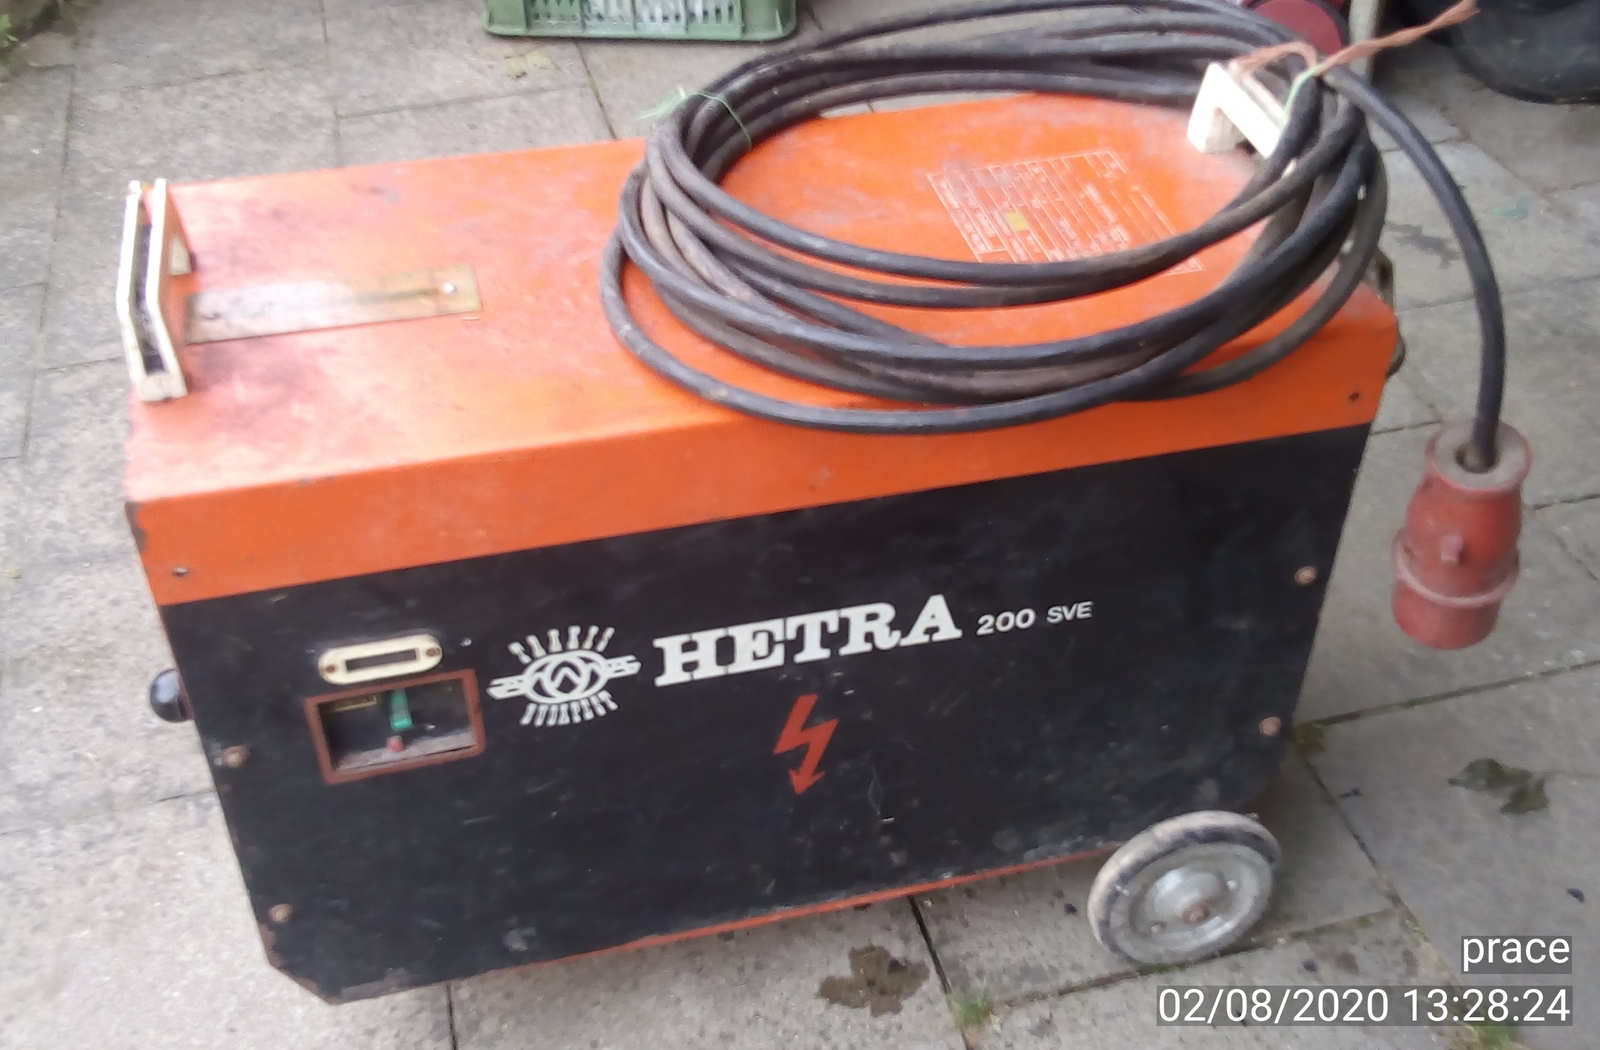 Elektrická svářečka HETRA 200 SVE + kabely, TR WELD Třebíč, prodej a servis svářeček